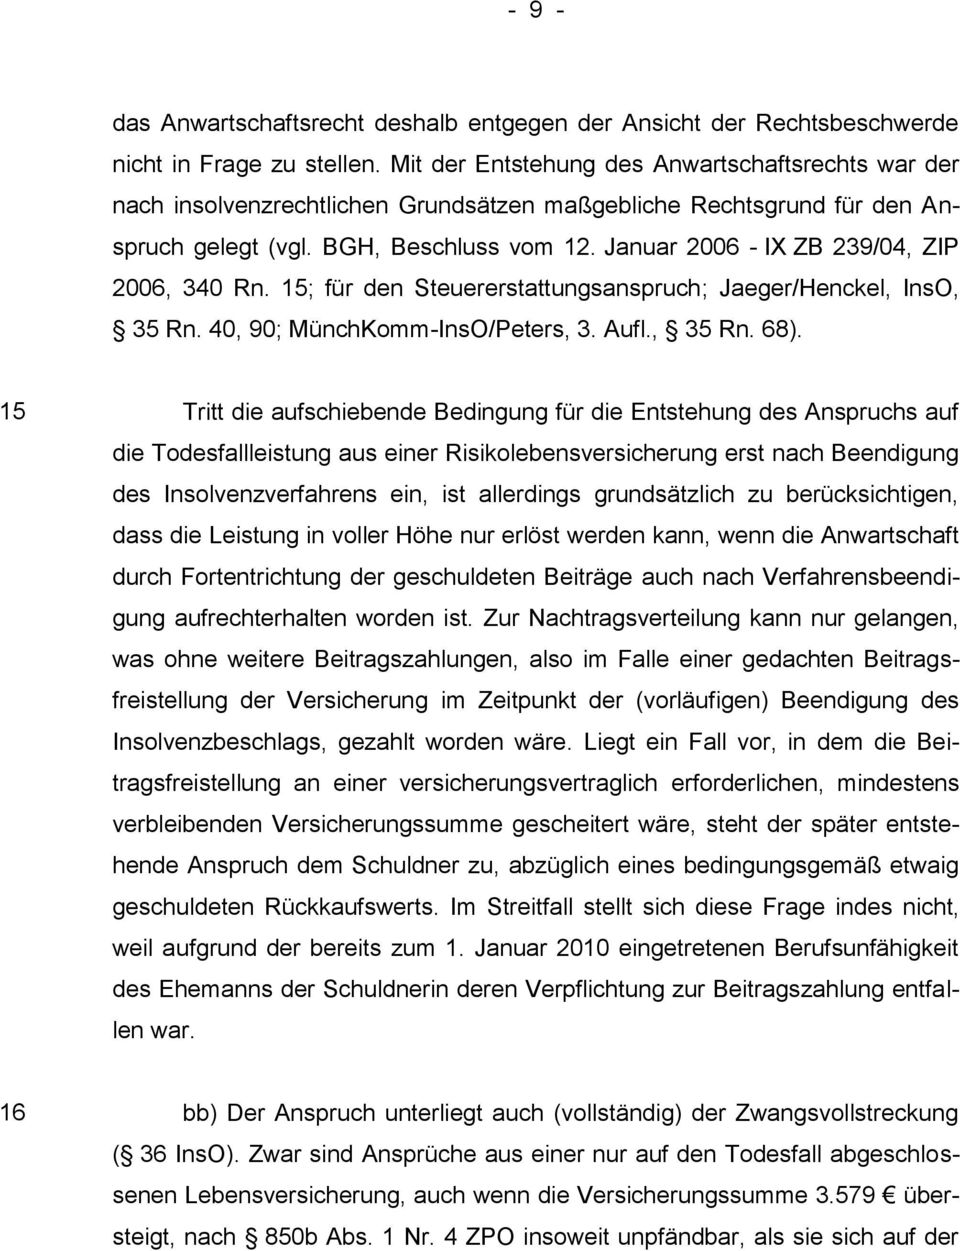 Januar 2006 - IX ZB 239/04, ZIP 2006, 340 Rn. 15; für den Steuererstattungsanspruch; Jaeger/Henckel, InsO, 35 Rn. 40, 90; MünchKomm-InsO/Peters, 3. Aufl., 35 Rn. 68).